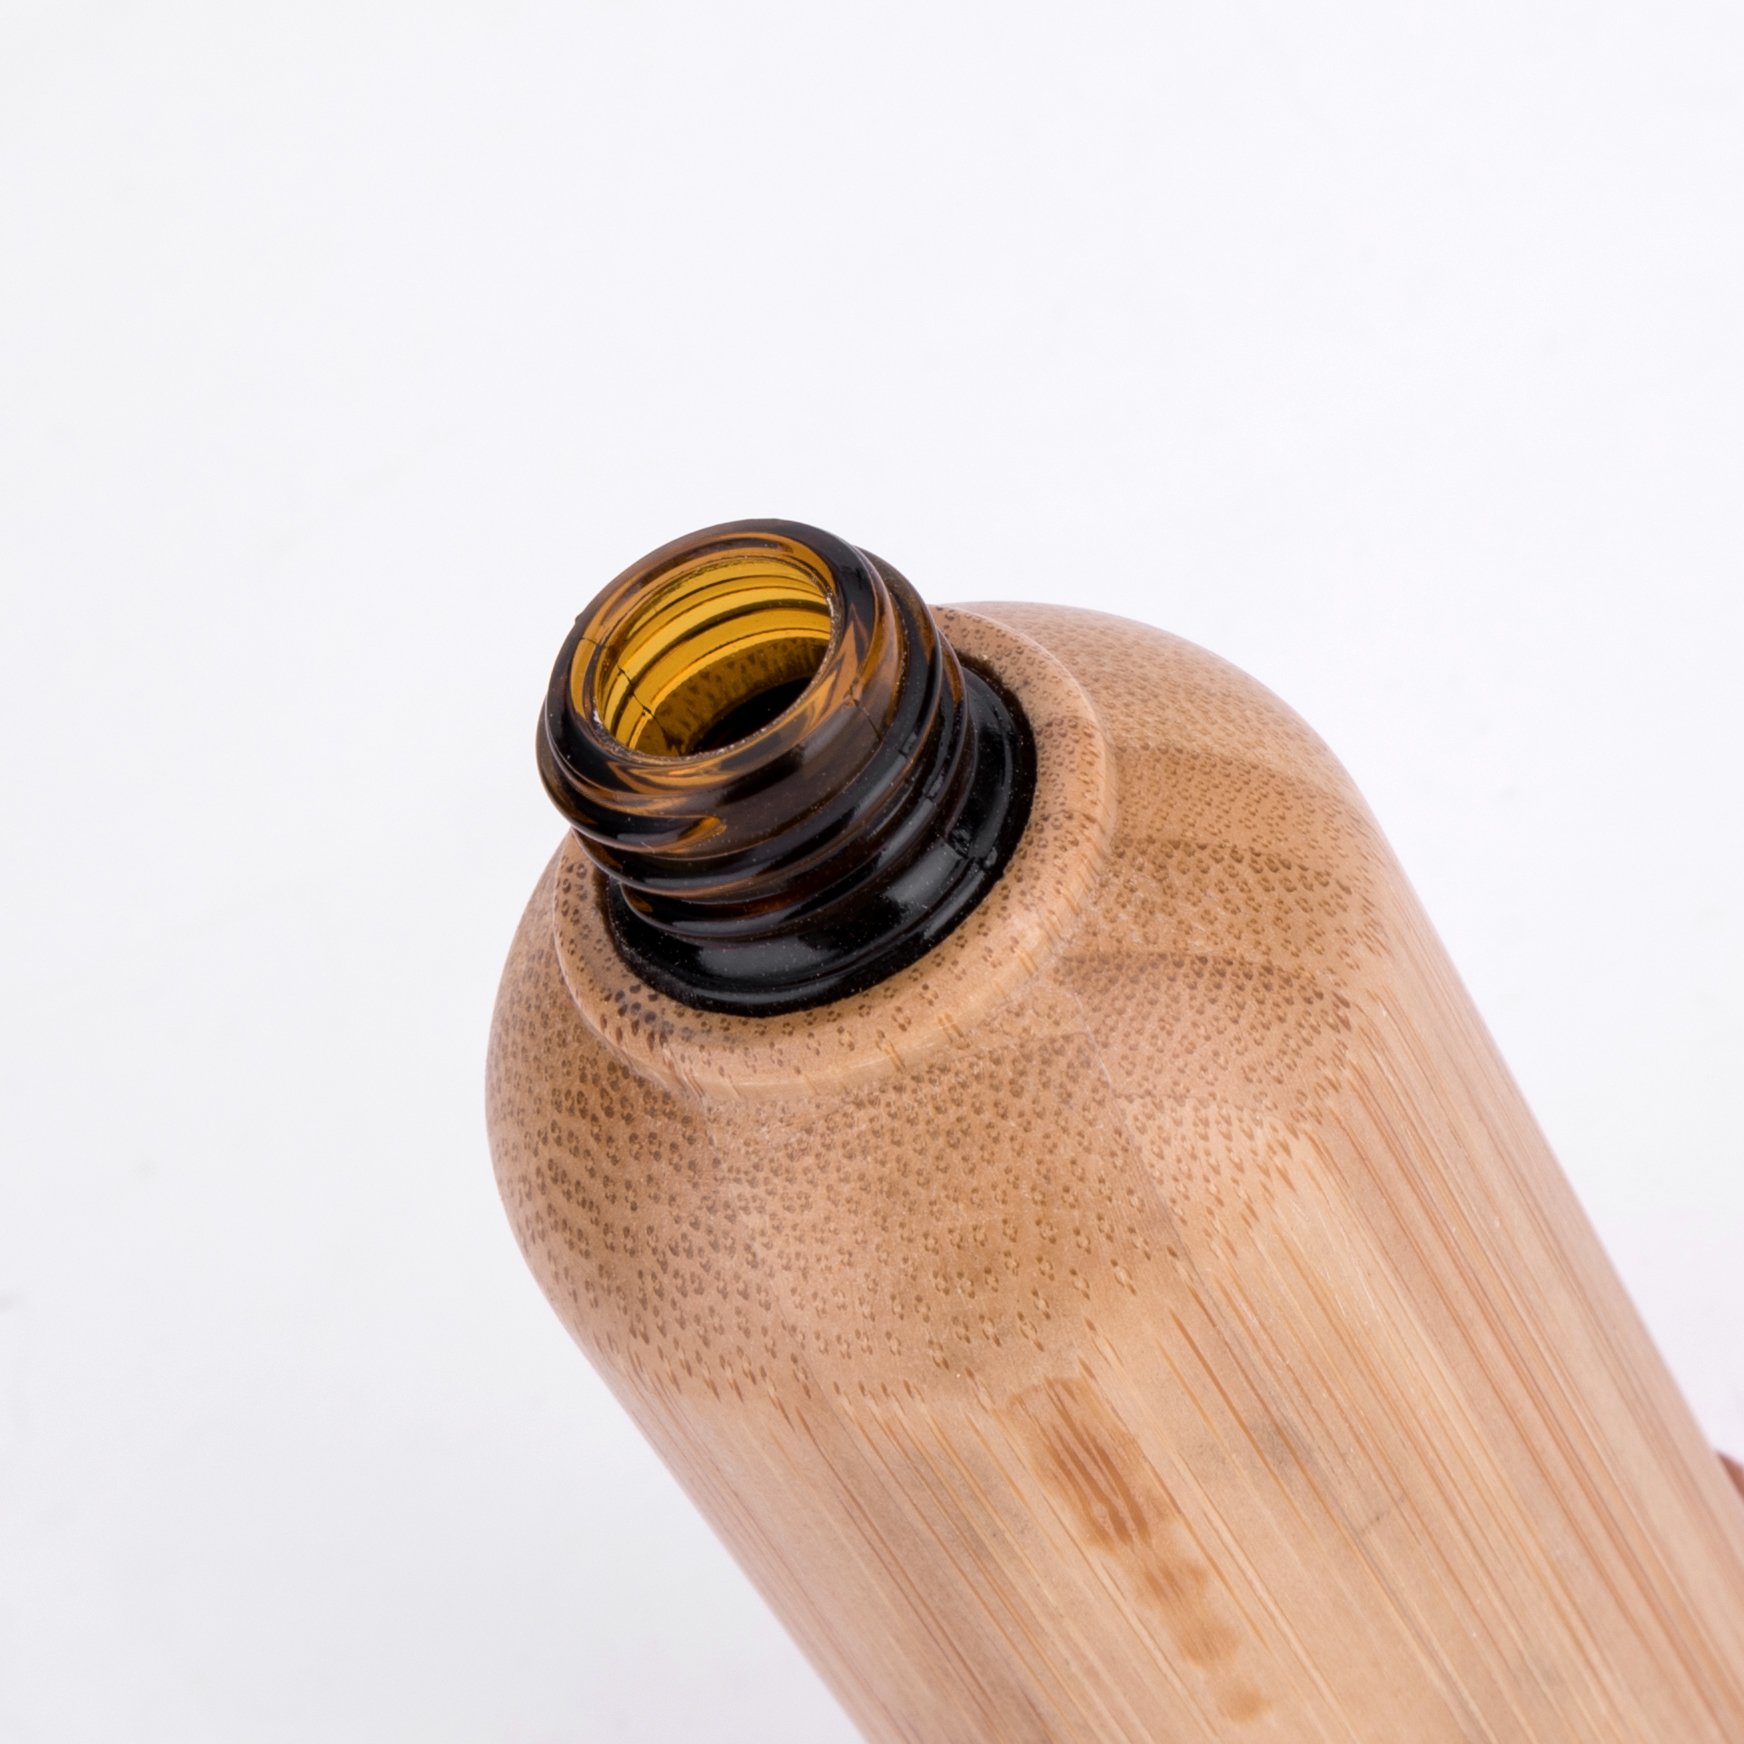 Kosmetische Flasche des ätherischen Öls des Bambusses mit Tropfenzähler